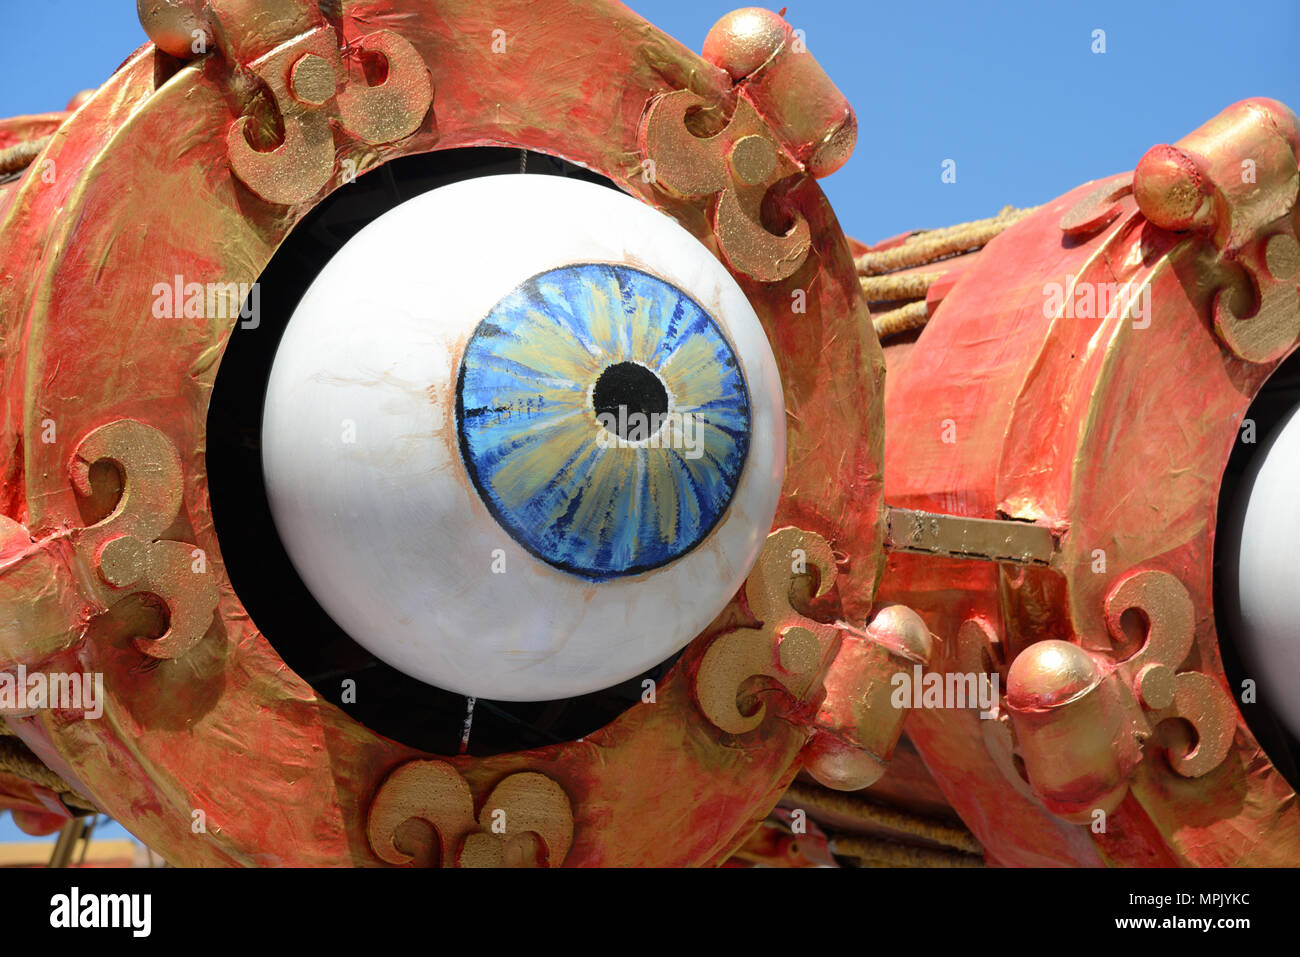 Blue Eye gigante o globo ocular de flotación durante el Carnaval El carnaval anual de primavera en Aix-en-provence Provence Francia Foto de stock